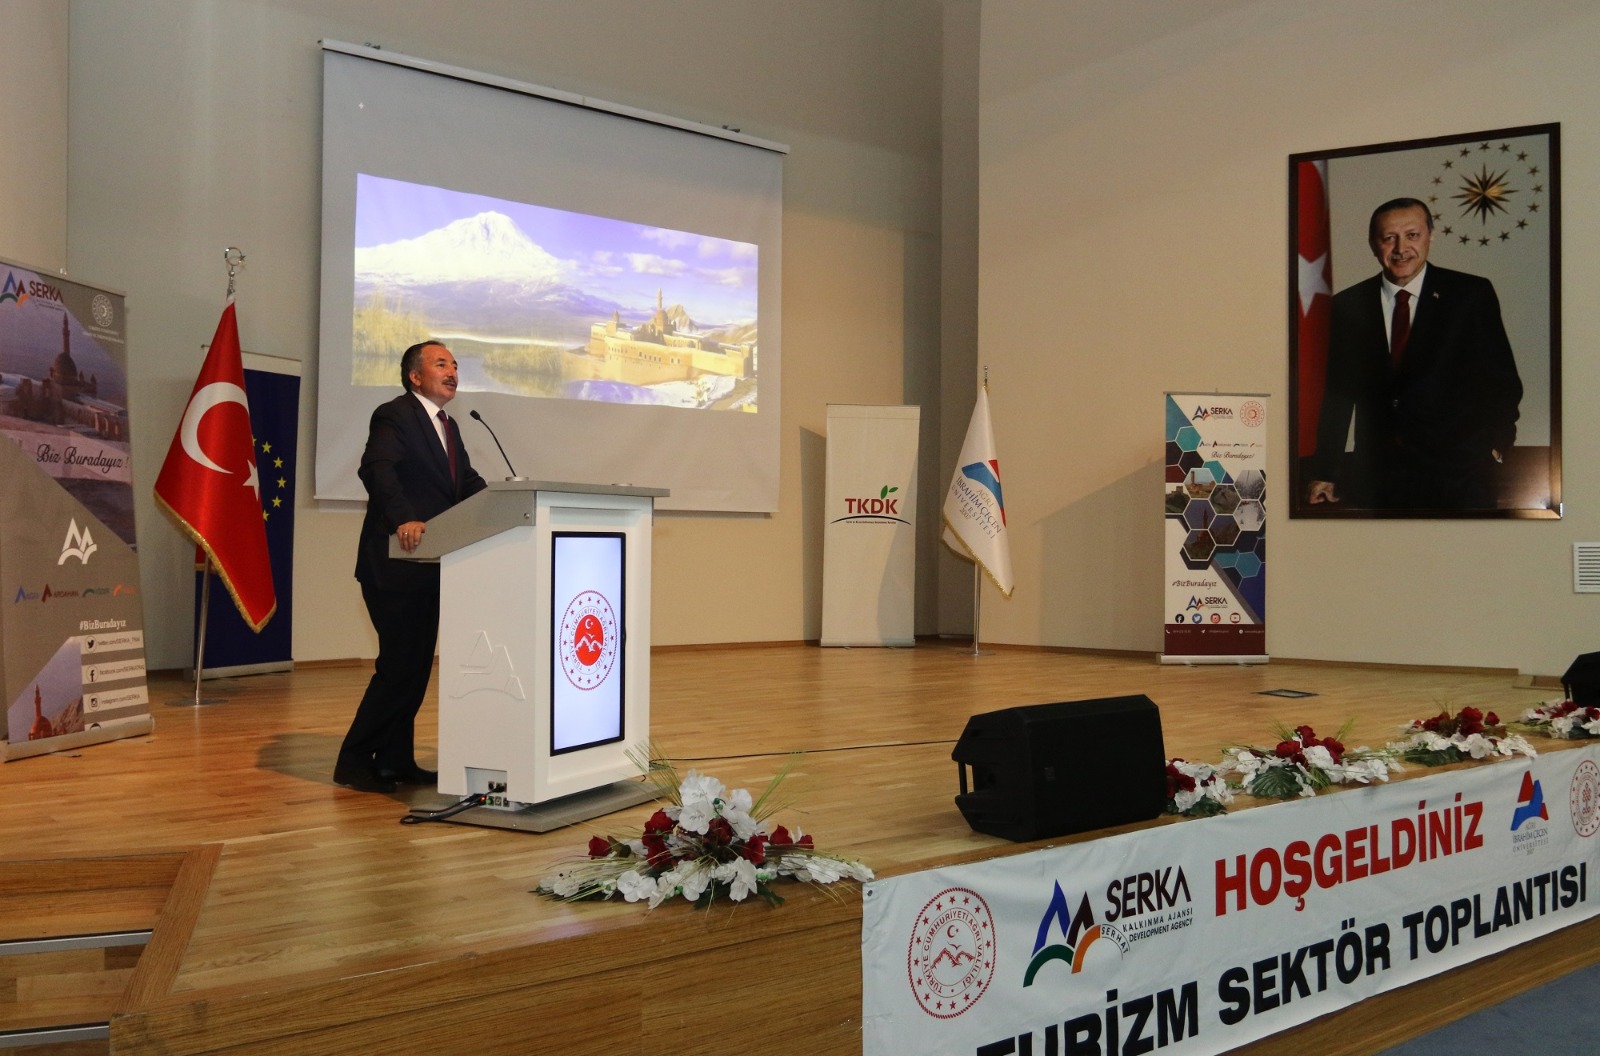 AİÇÜ Rektörü Prof. Dr. Karabulut Ağrı Turizm Sektör Toplantısına Katıldı